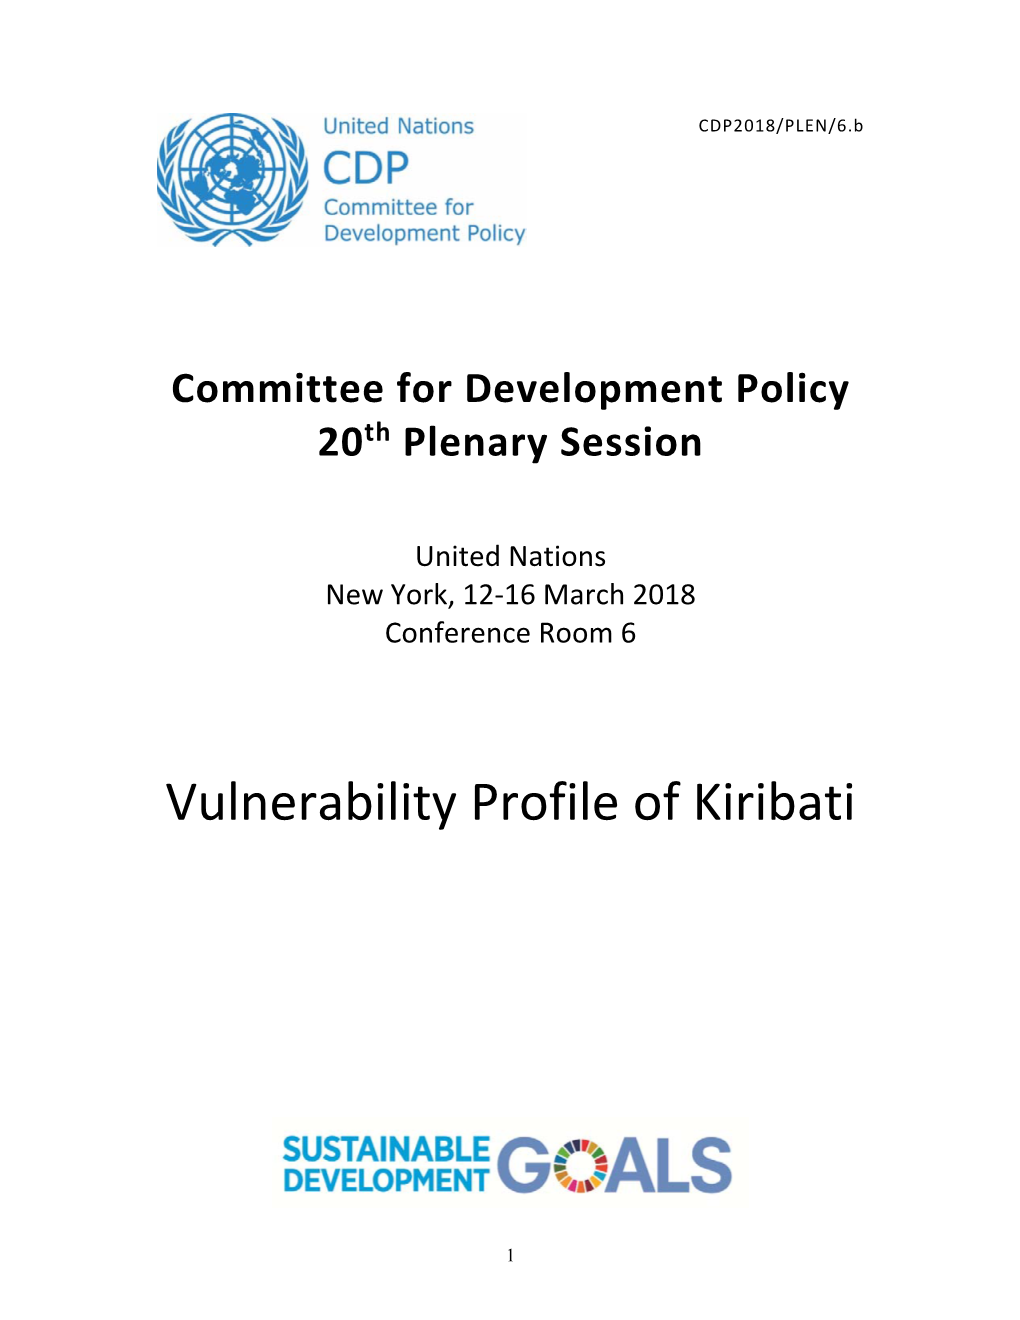 Vulnerability Profile of Kiribati